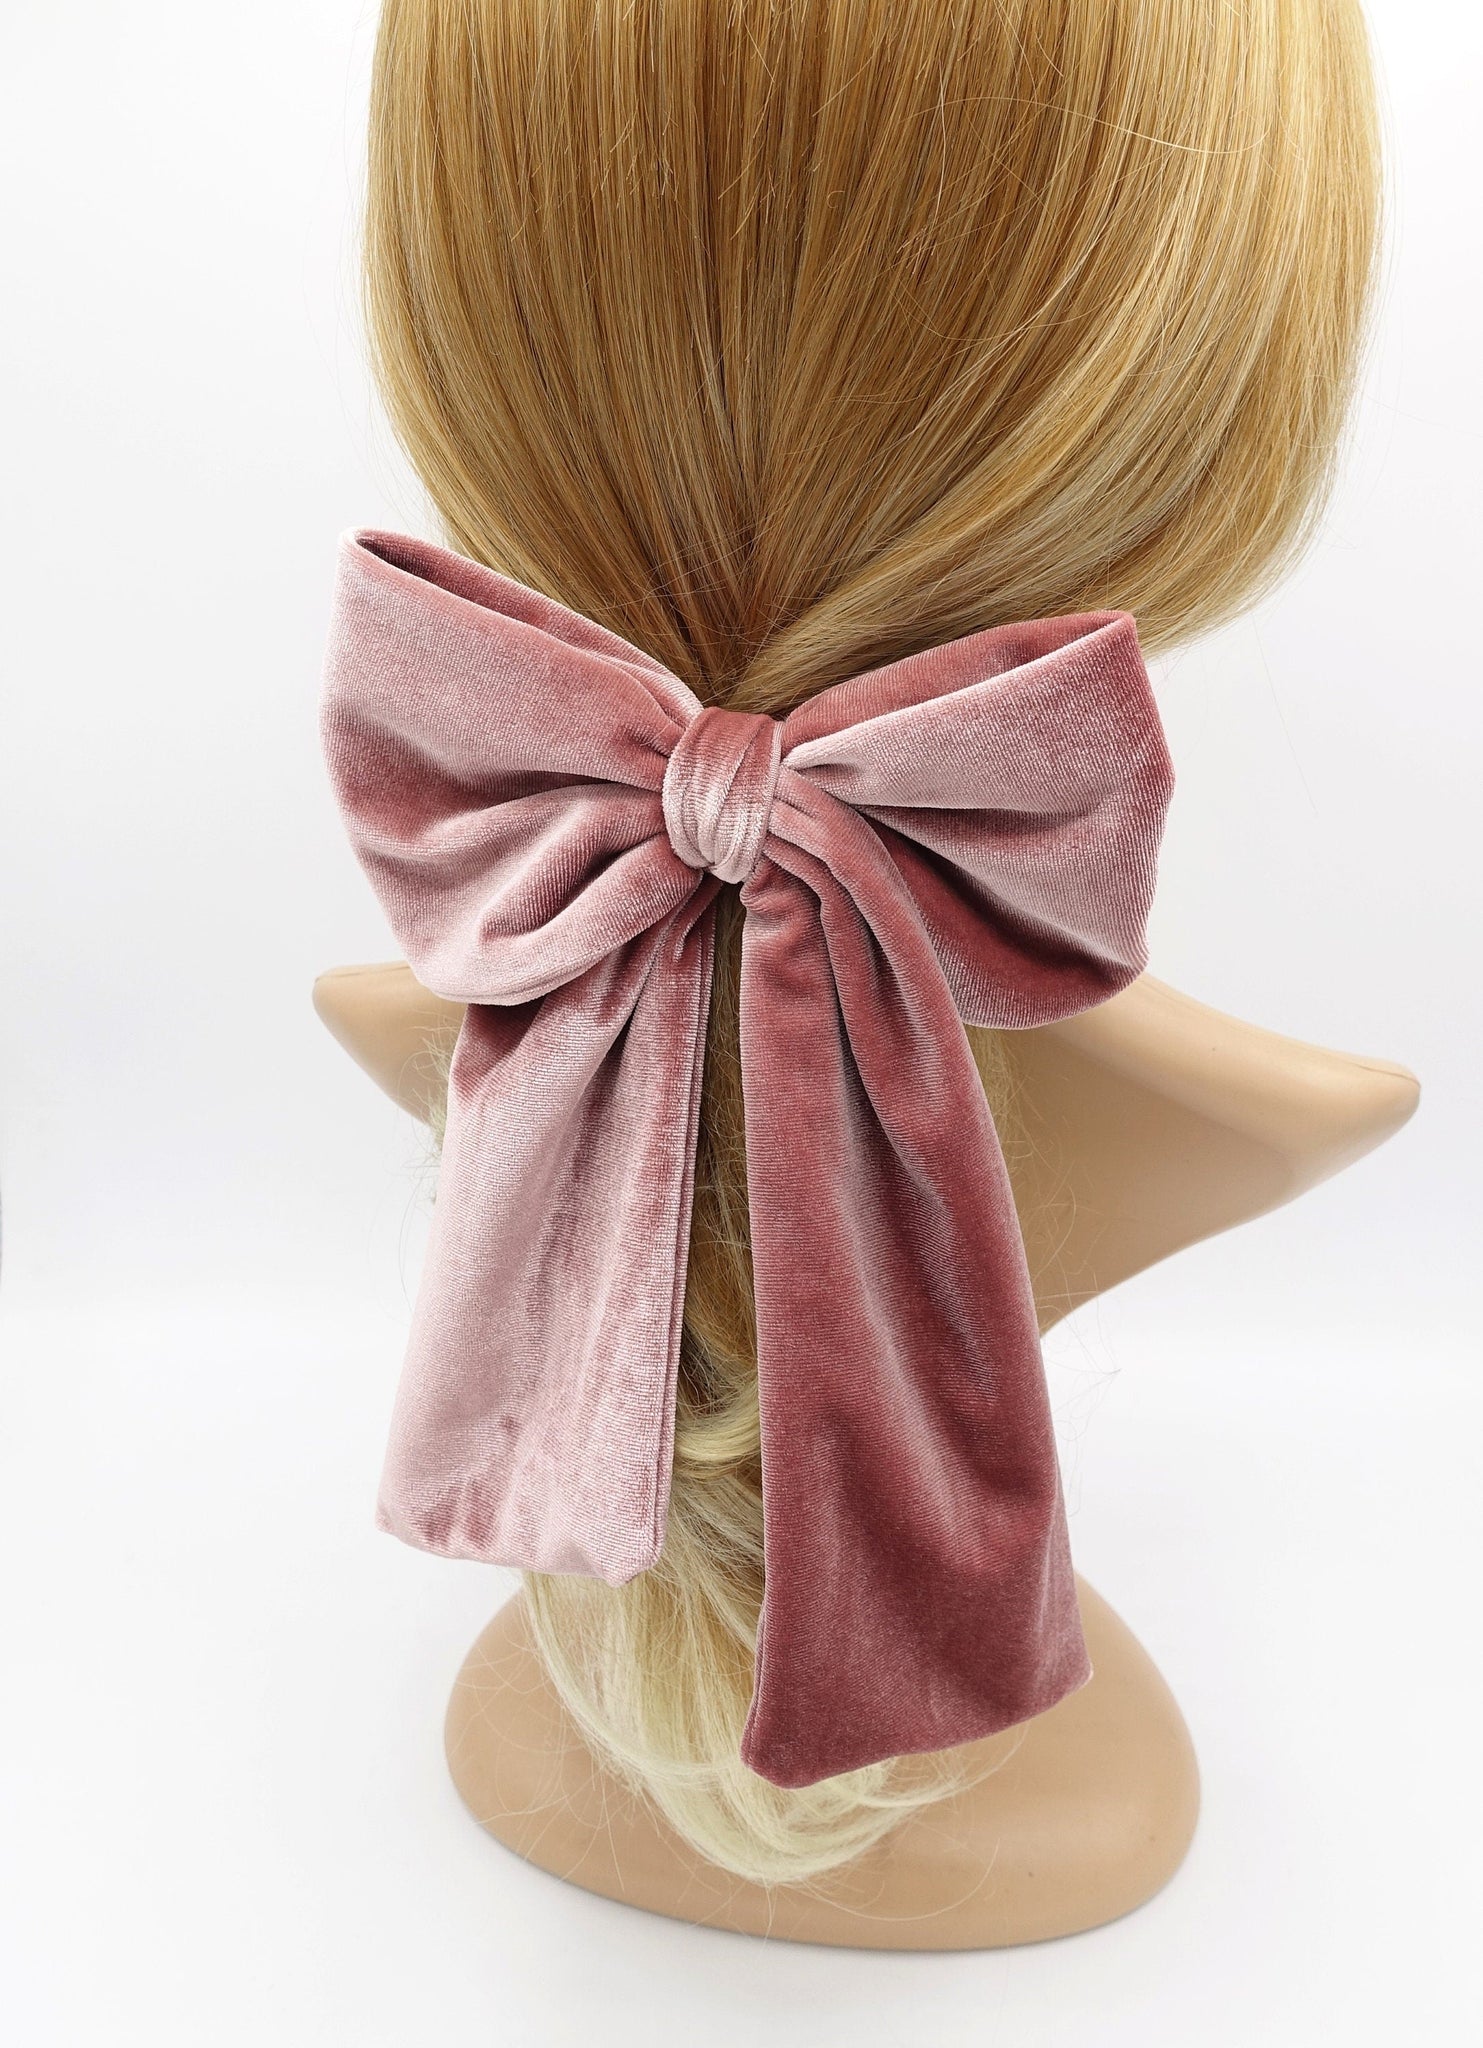 veryshine.com Barrette (Bow) velvet hair bow medium large sized hair accessory for women